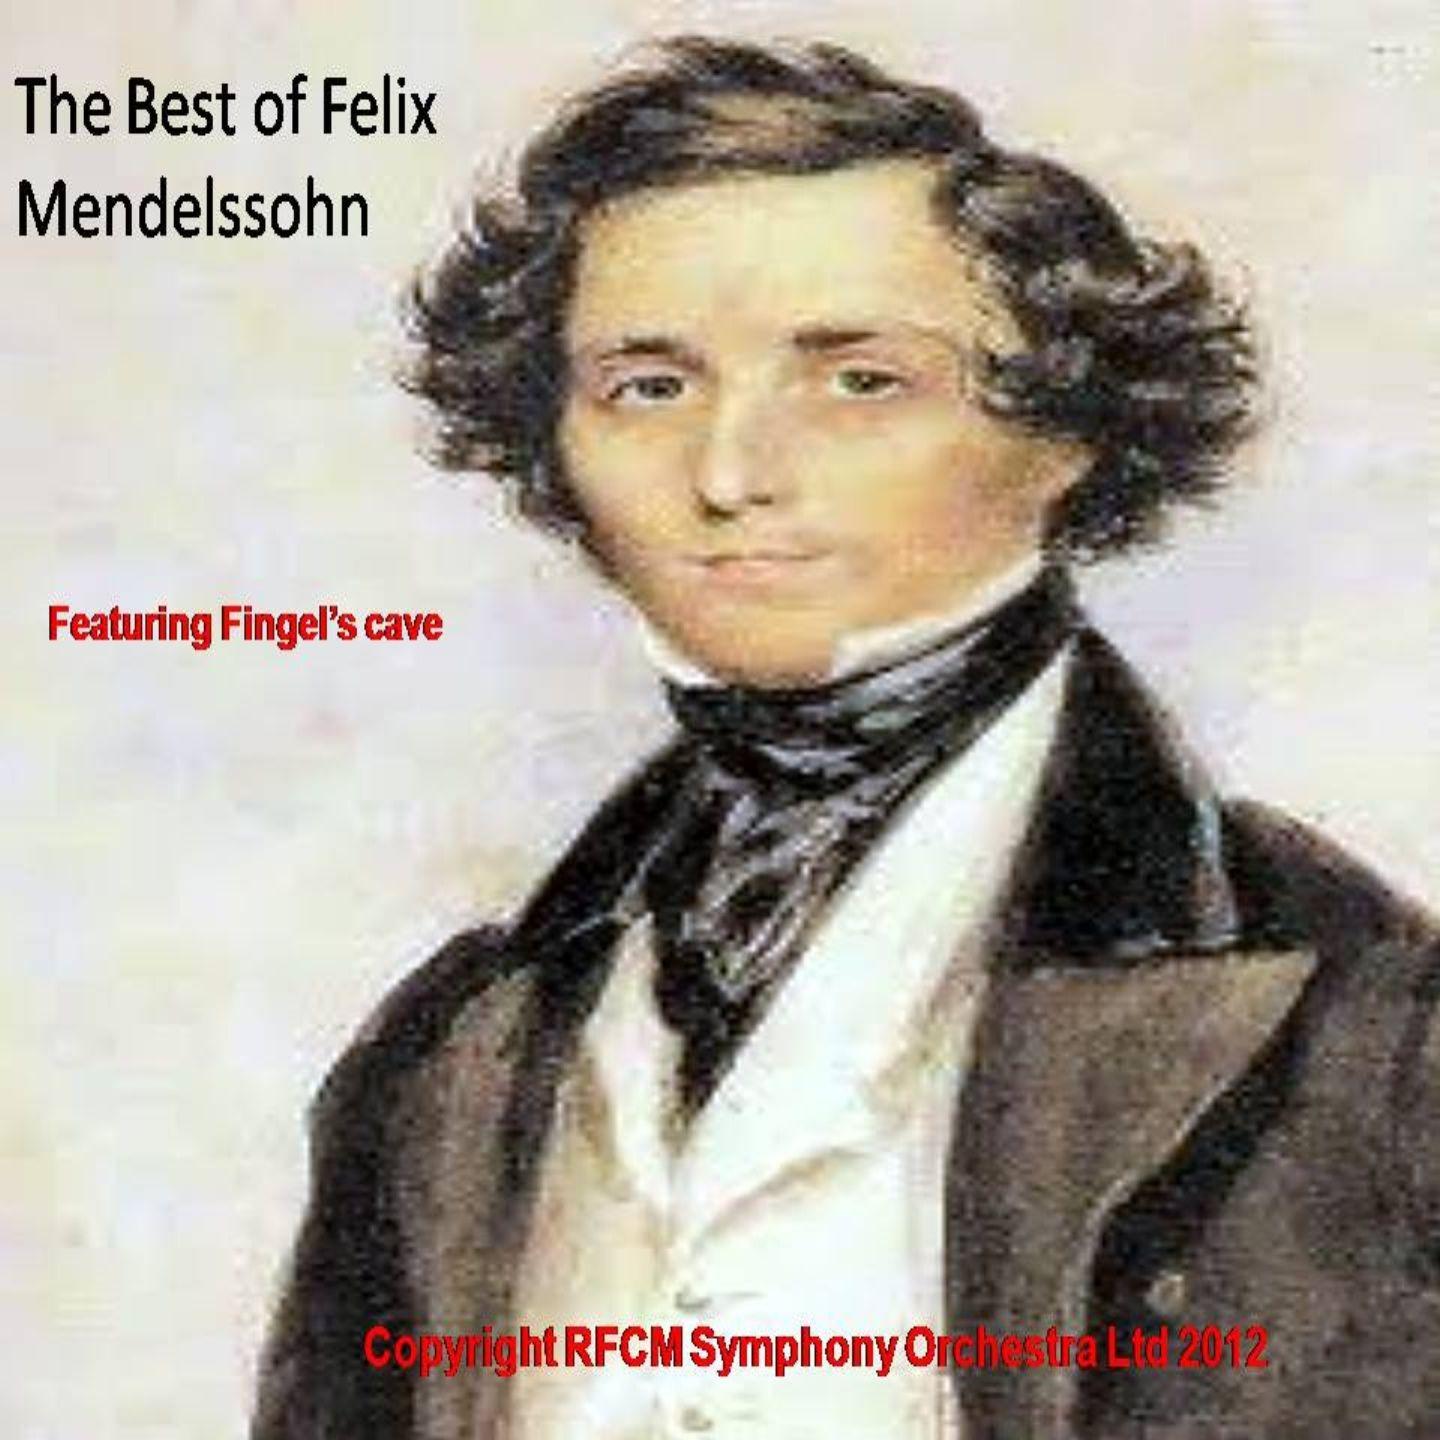 The Best of Felix Mendelssohn